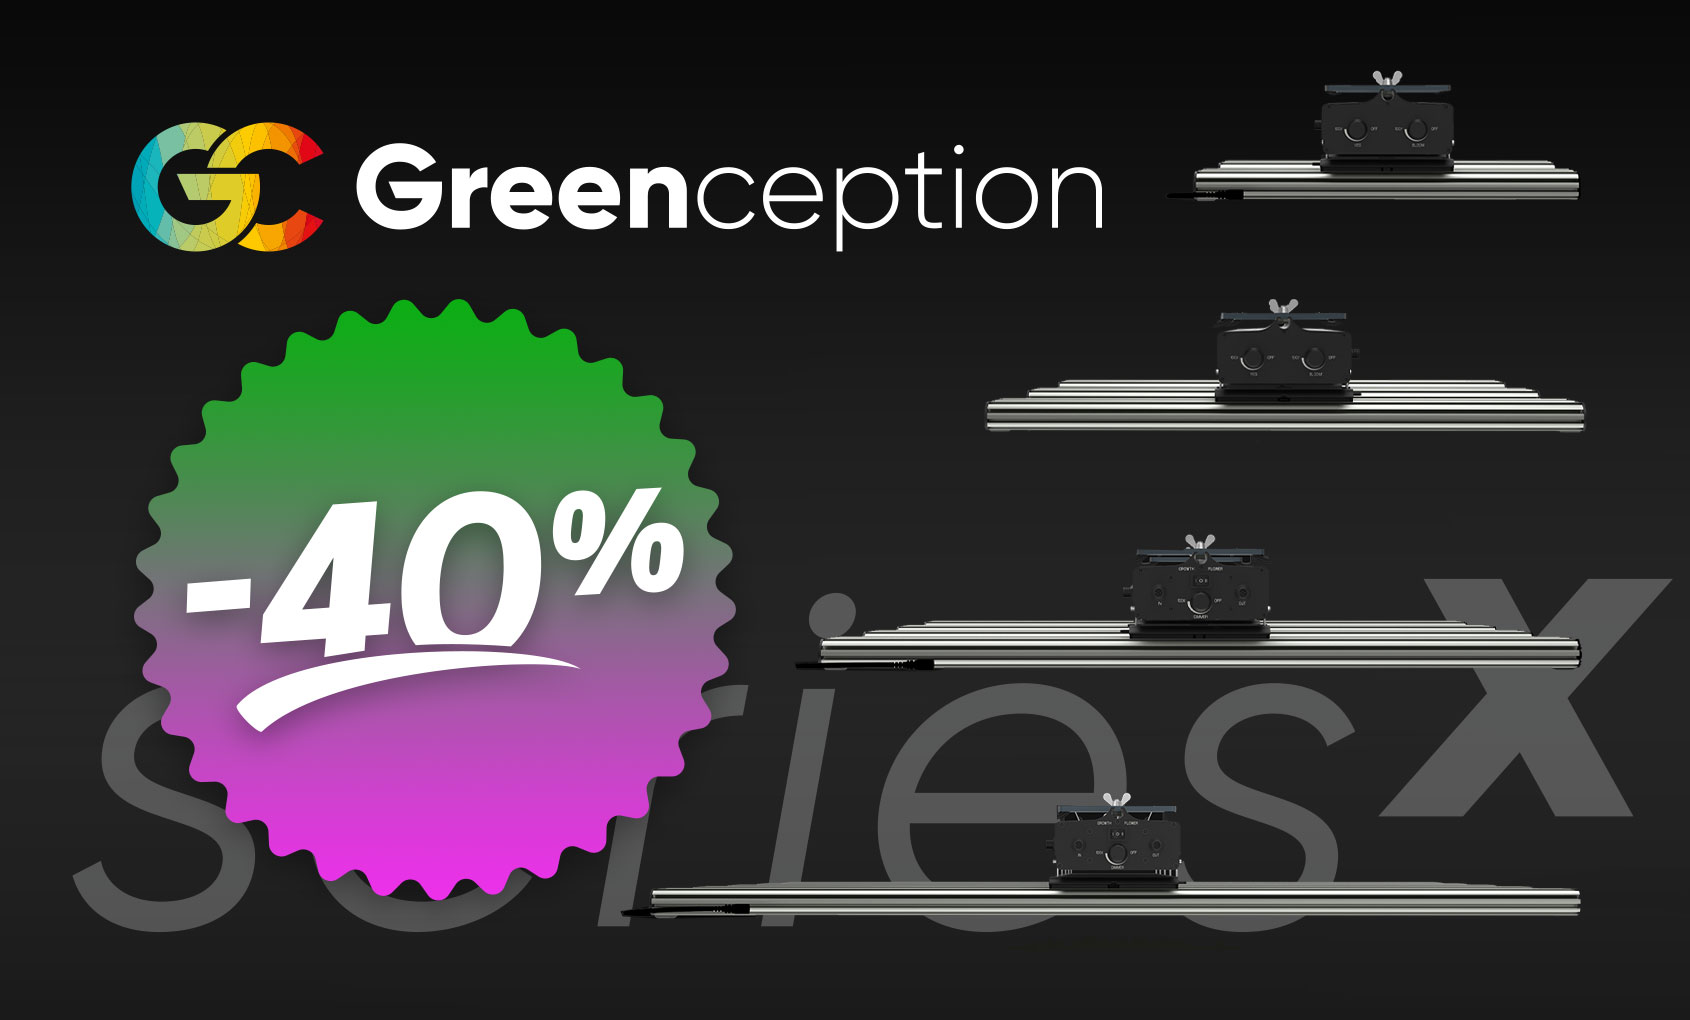 greenception-minus-40-percent